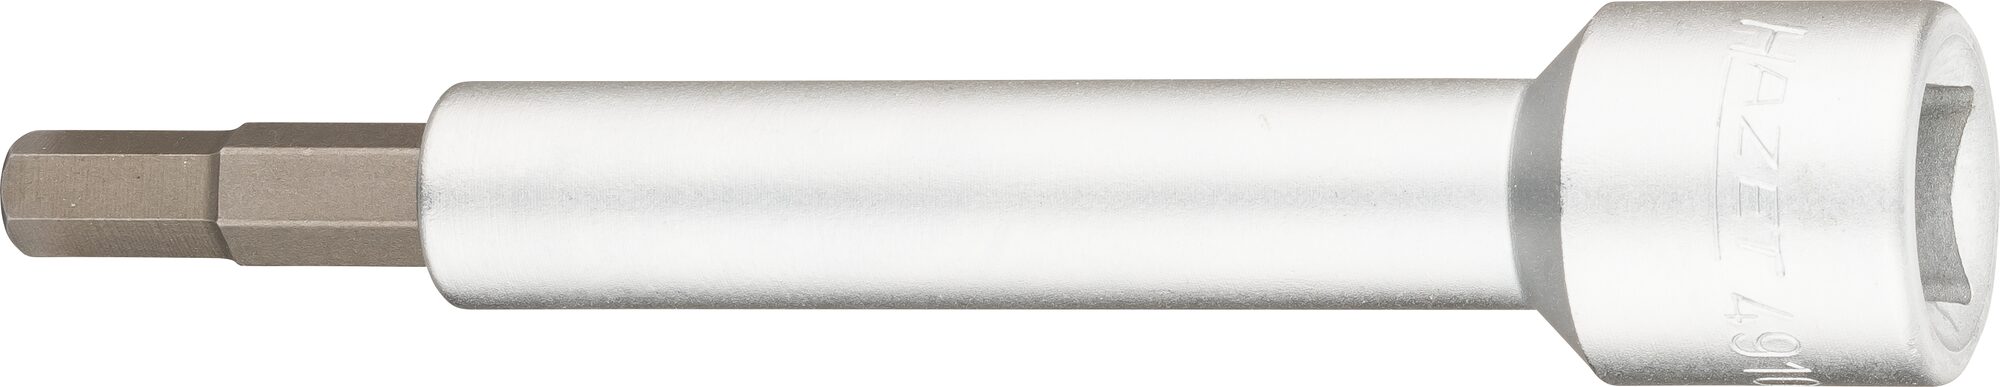 HAZET Verlängerung 4910-7 · Vierkant hohl 12,5 mm (1/2 Zoll) · Innen Sechskant Profil · 7 mm